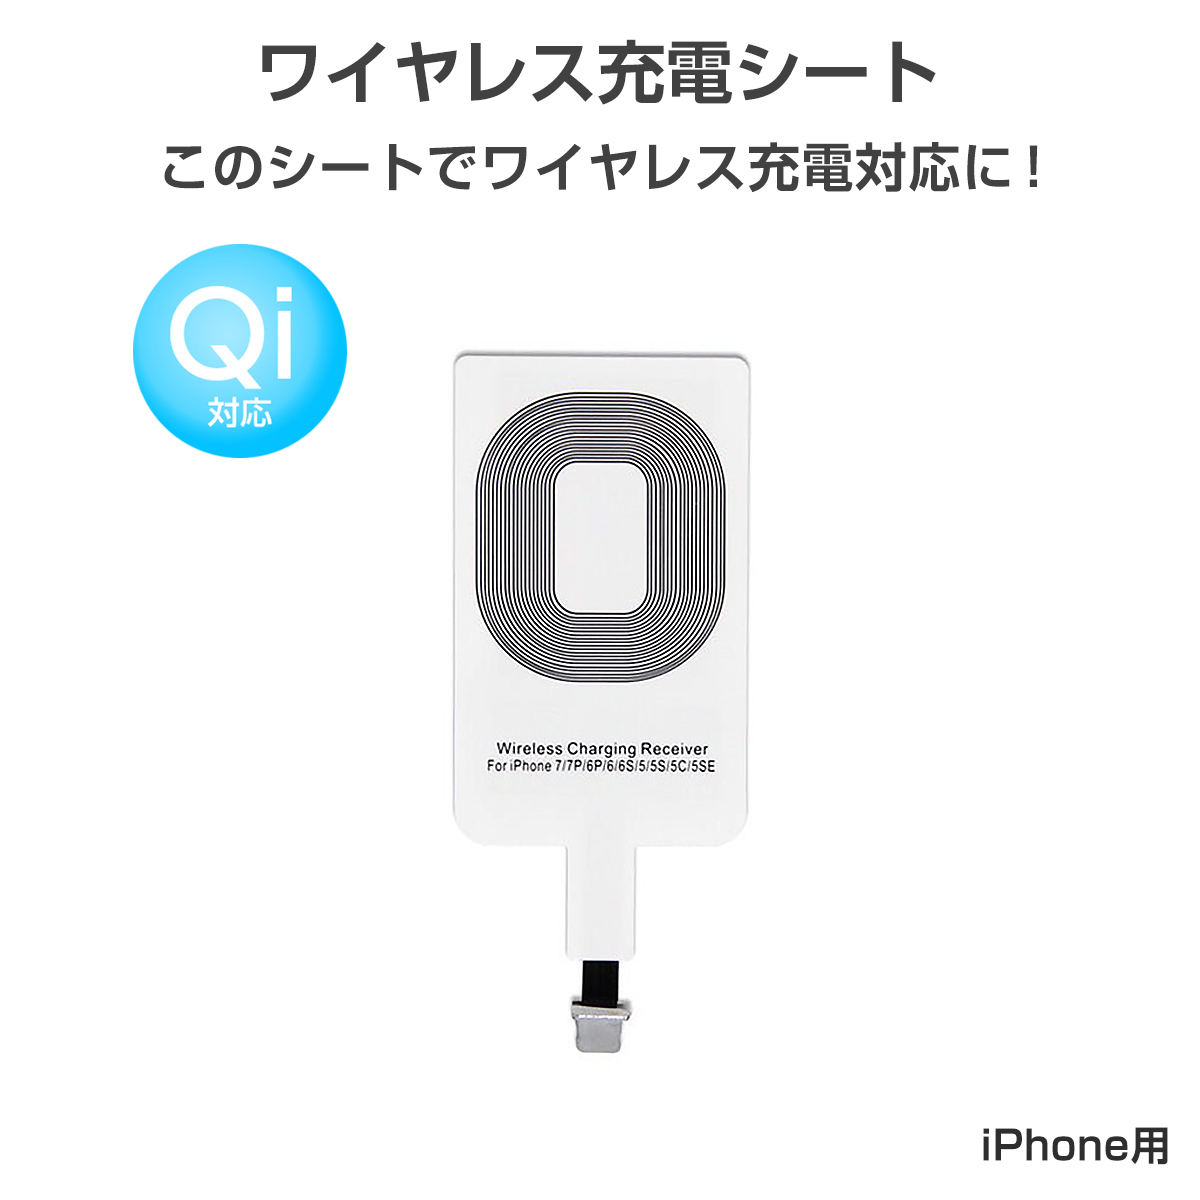 ワイヤレス充電レシーバー ワイヤレス充電化 Qi 拡張 スマホ iPhone用 iPhone Plus Plus 5s 5c対応 1ヶ月保証